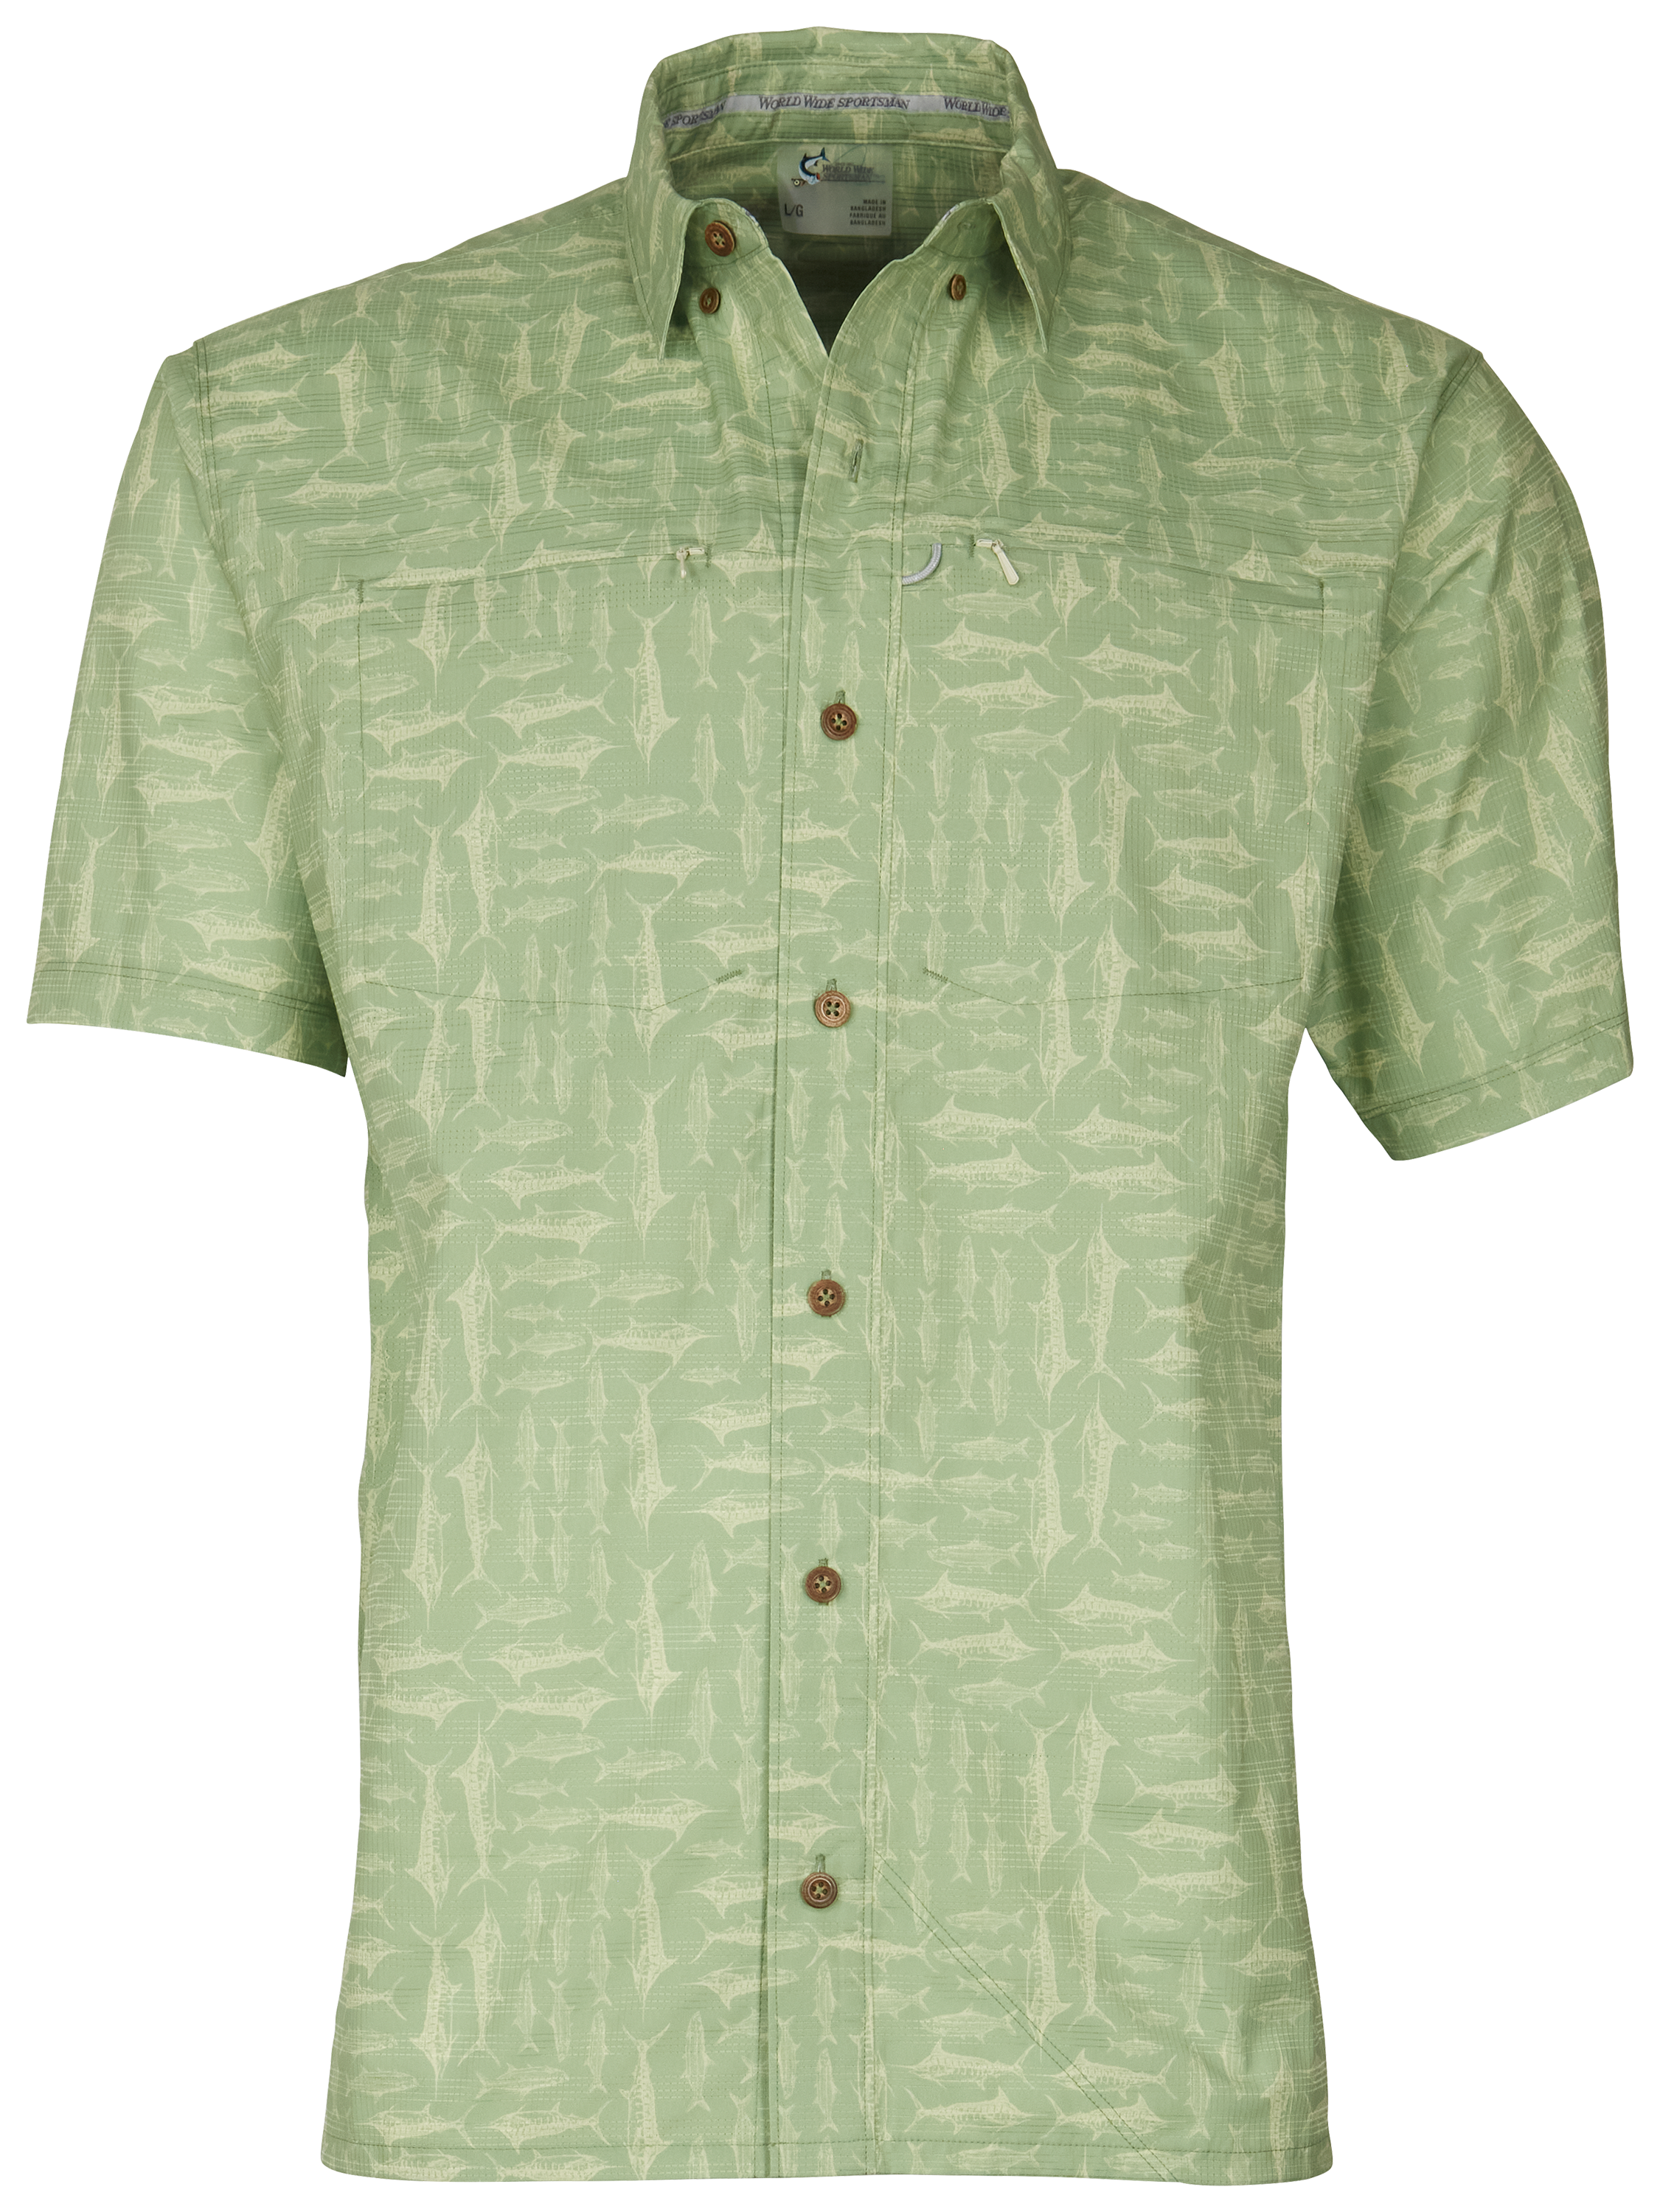 World Wide Sportsman Seacrest Print Short-Sleeve Button-Down Shirt for Men - Quiet Green Salt Rub - 3XL